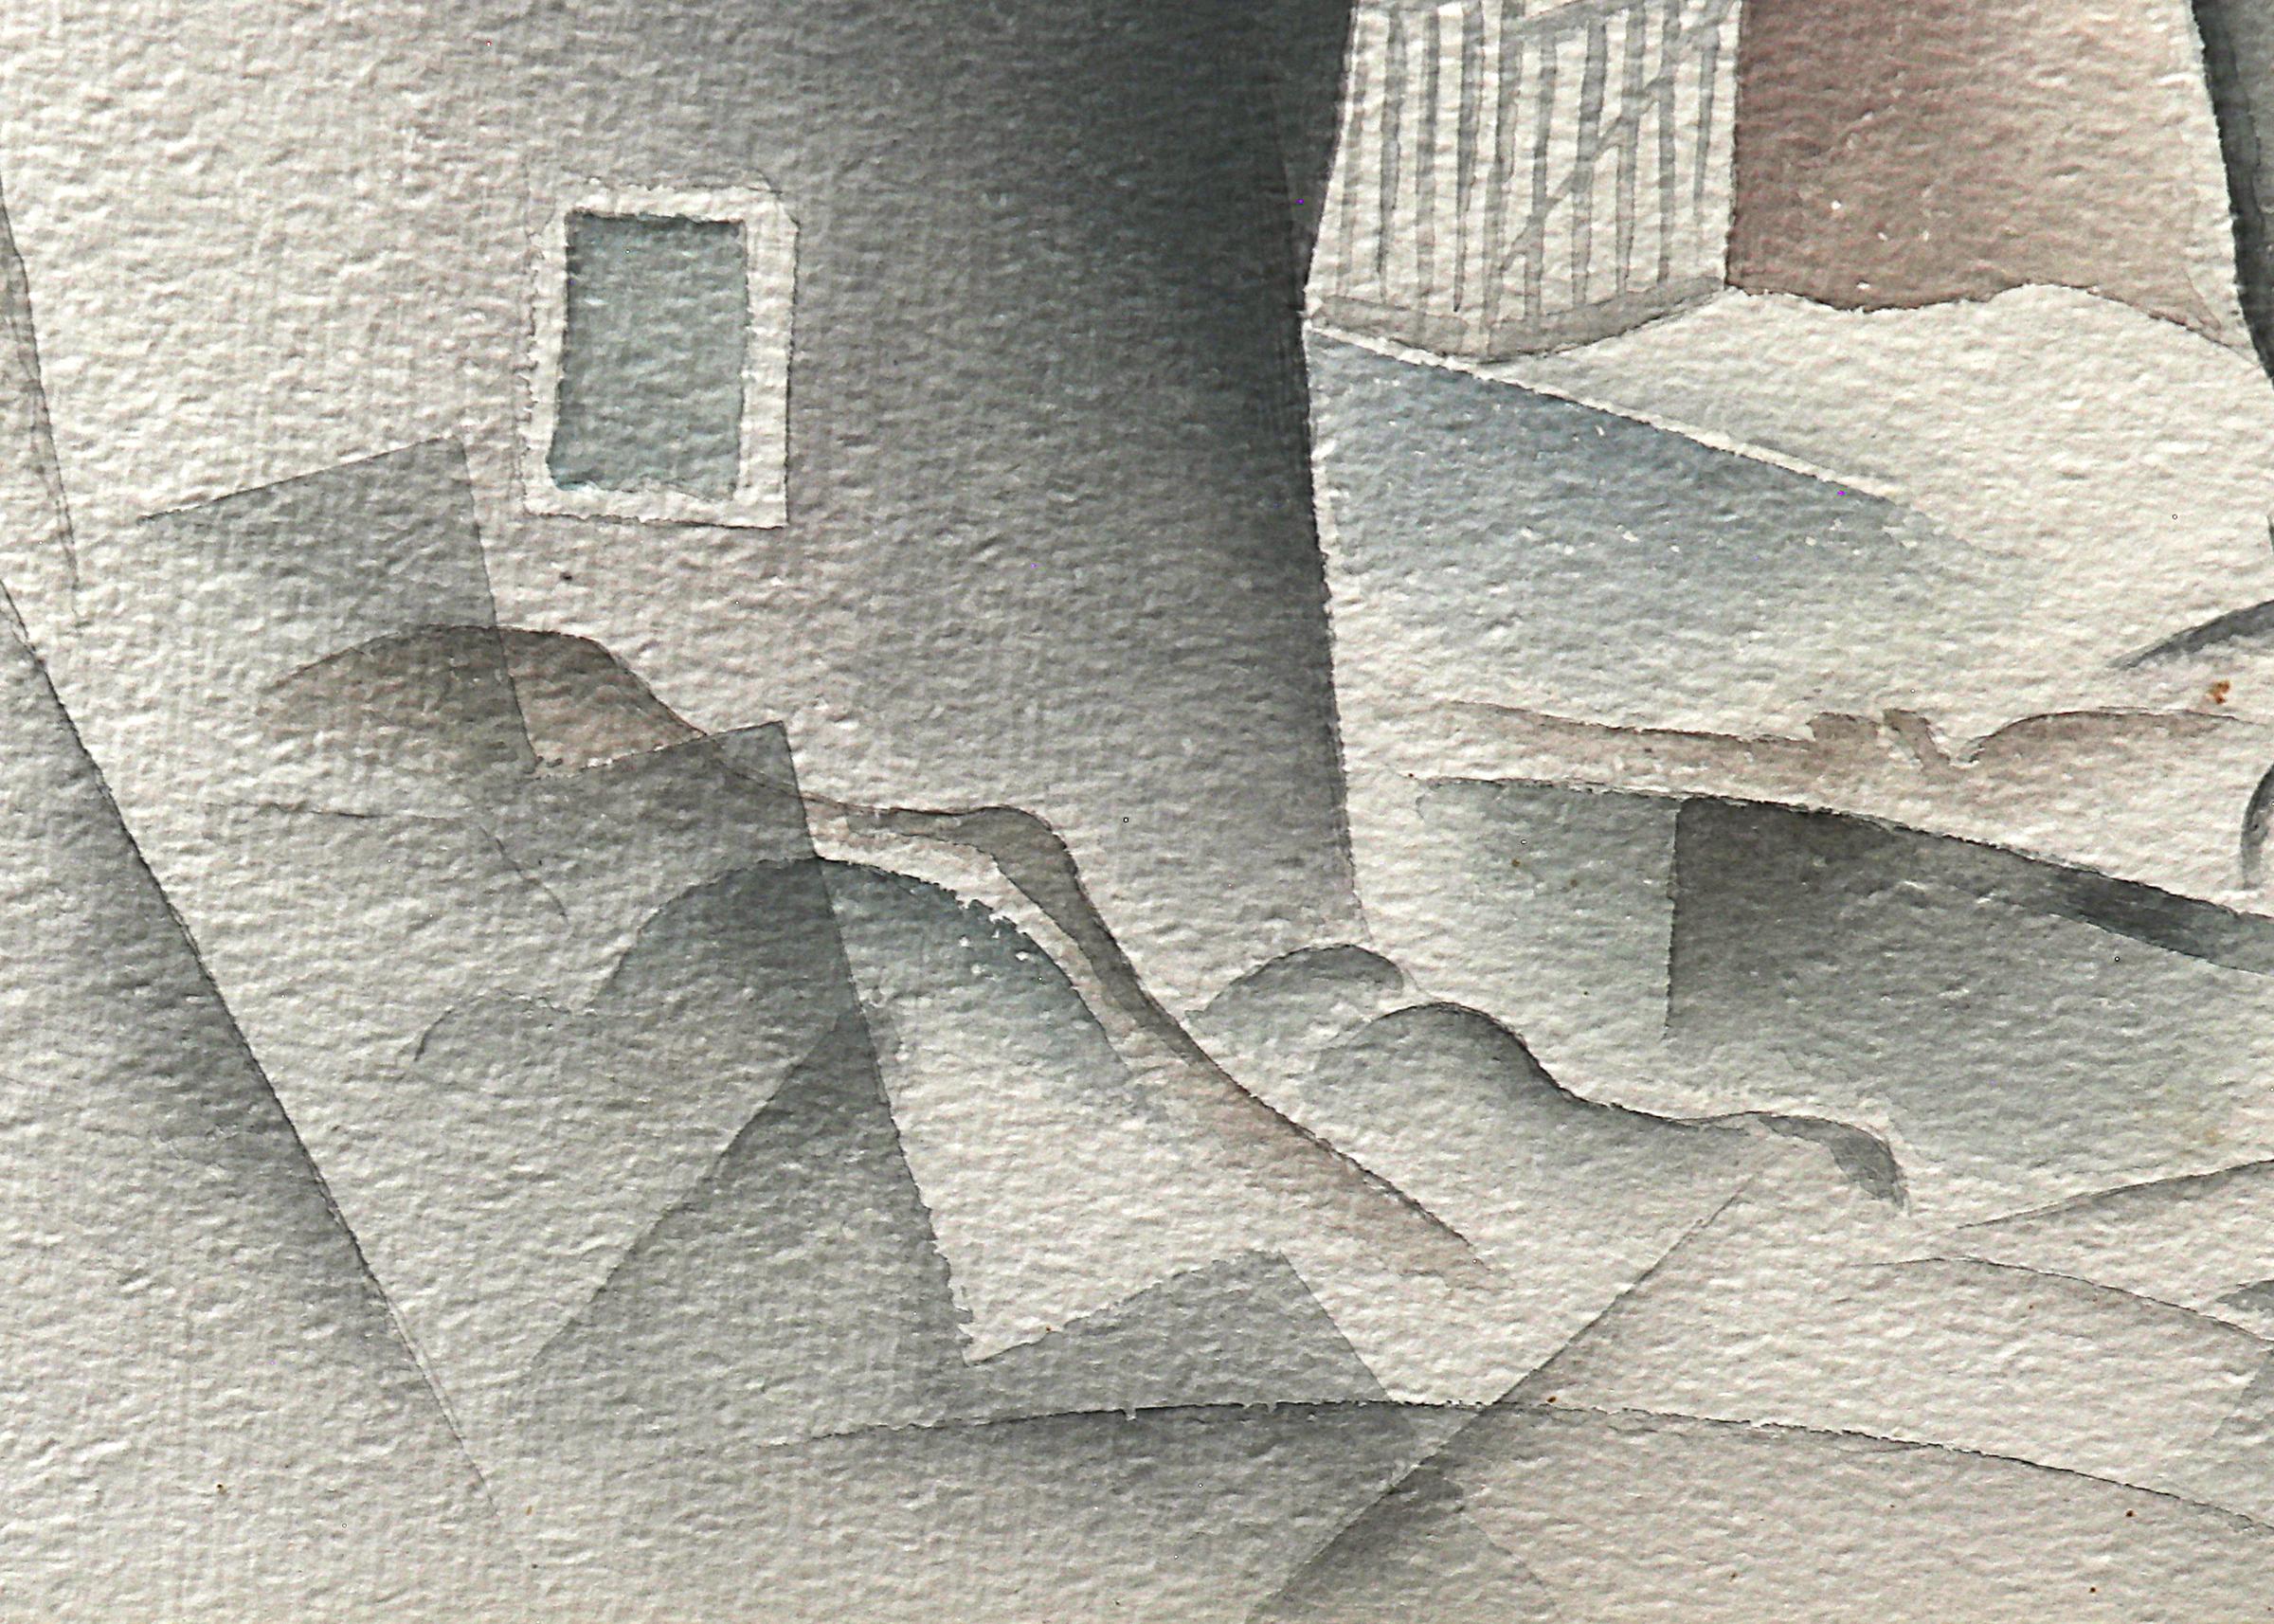 Modernistische Landschaft in Colorado, Aquarell auf Papier von Turner B. Messick (1878-1952) aus dem Jahr 1938. Baum mit Häusern und Bergen im Hintergrund, gemalt in Weiß-, Grau-, Lila- und Blautönen. Bild ist 16¾  x 14 Zoll, gerahmt sind die Maße